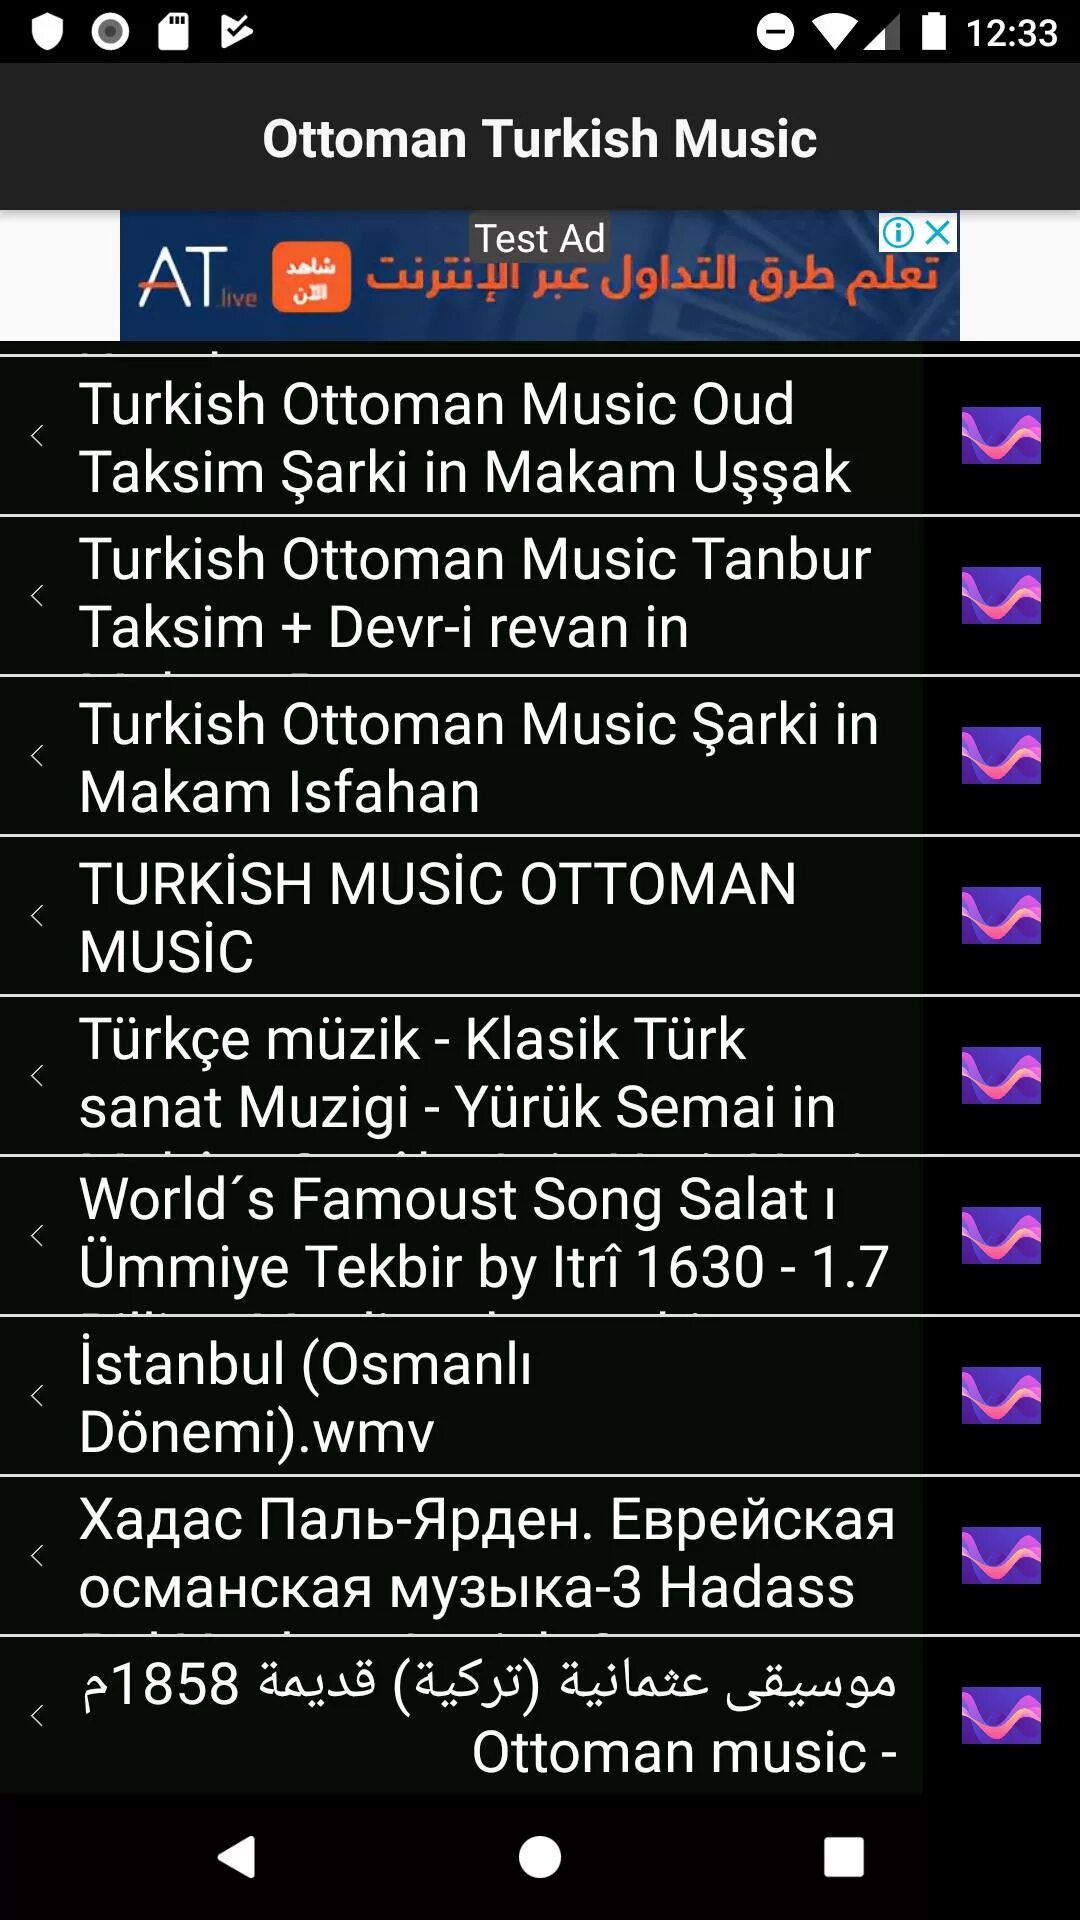 Турецкая музыка. Турецкая музыка факты. Турецкая музыка слушать. Лучшие турецкие песни. Турецкие мелодии на телефон